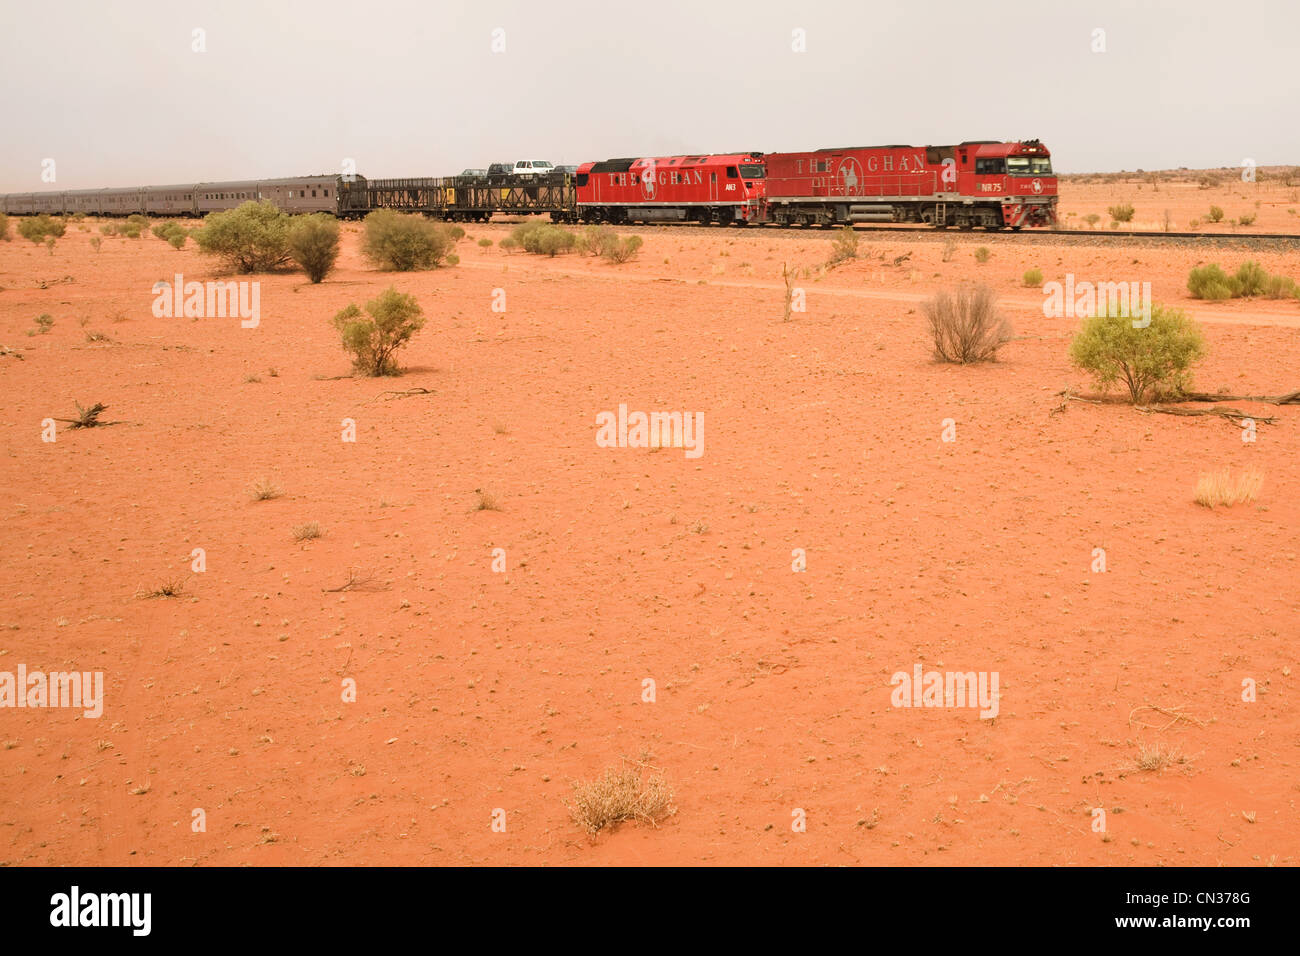 L'Australie, Territoire du Nord, le centre rouge, le Ghan passant dans le désert au sud d'Alice Springs Banque D'Images